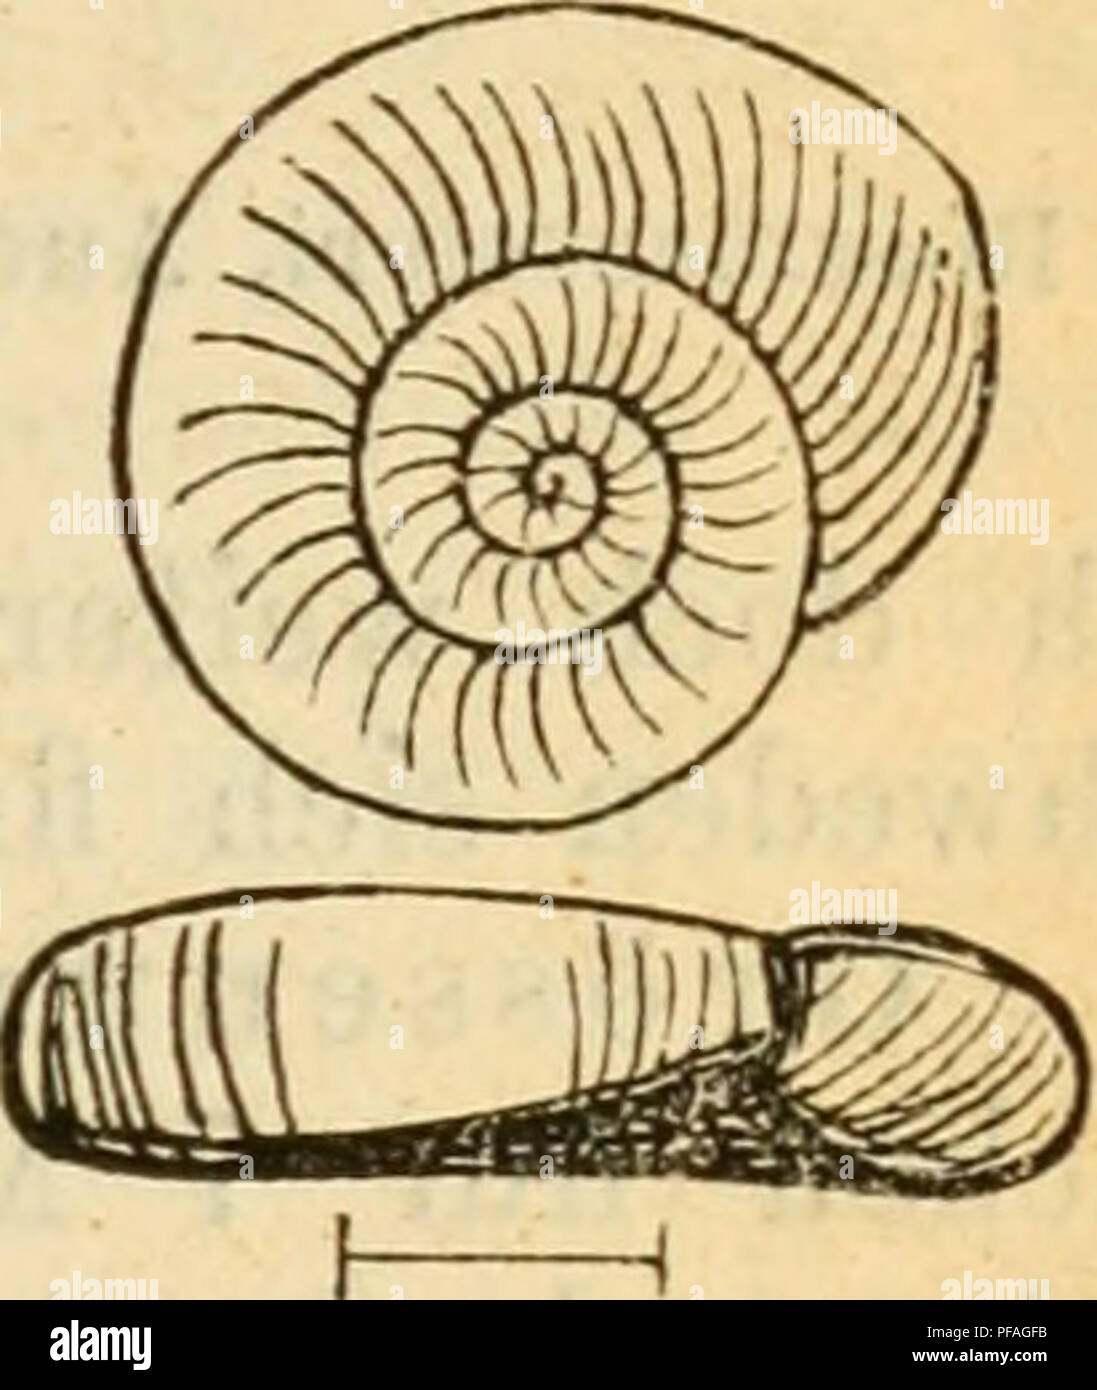 . Deutsche excursions-mollusken-fauna. Mollusks. 415 12. Flanorbis glaber, Jeffrey. Planorbis (jlaher, Jeffreys, Trans. Linn. soc. 1830 p. 387. — Brit. CoDch. I. p. 85. — laevis, Alder, Cat. suppl. moU. Newcast. in Trans. Newc. II. 1837 p. 387, — — Rossm., Icon. flg. 964. — cupaecula, v. Gallenstein, Kärnthen p. 16. — regularis, Hartm., Gasterop. p. 97 t 28. Anatomie: nicht untersucht. Thier: gelblich-grau, Fühler ziemlich kurz, cylindrisch; Fuss massig breit, namentlich vorne, mit gelblichem Rande. Gehäuse: klein, ziemlich festschalig, fein gestreift, glatt und glänzend, durchscheinend, von g Stock Photo